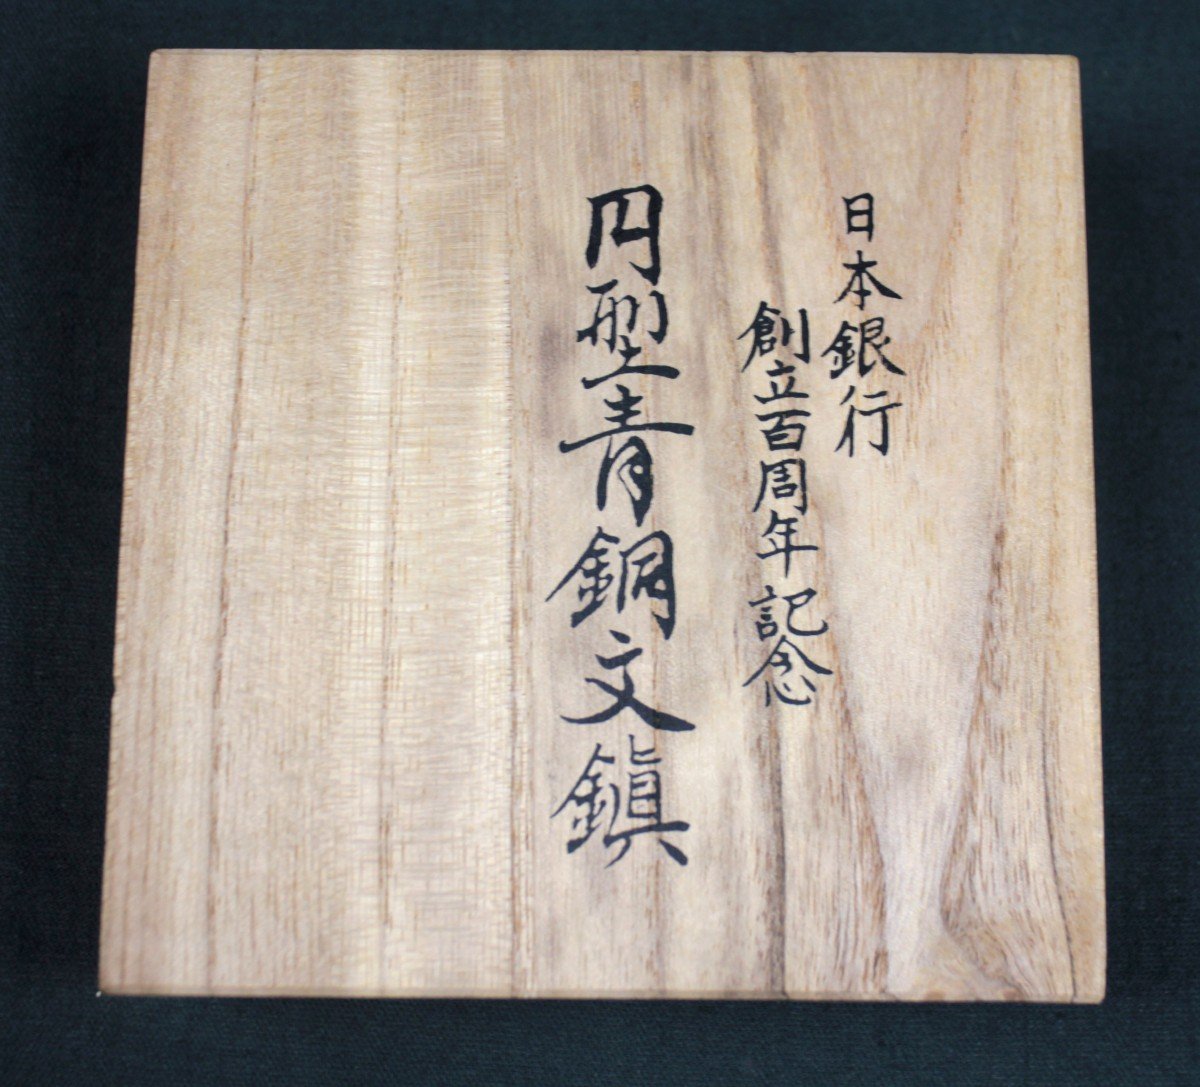 日本銀行 創立100周年記念 円型青銅文鎮 円形 文鎮 明治15年-昭和57年